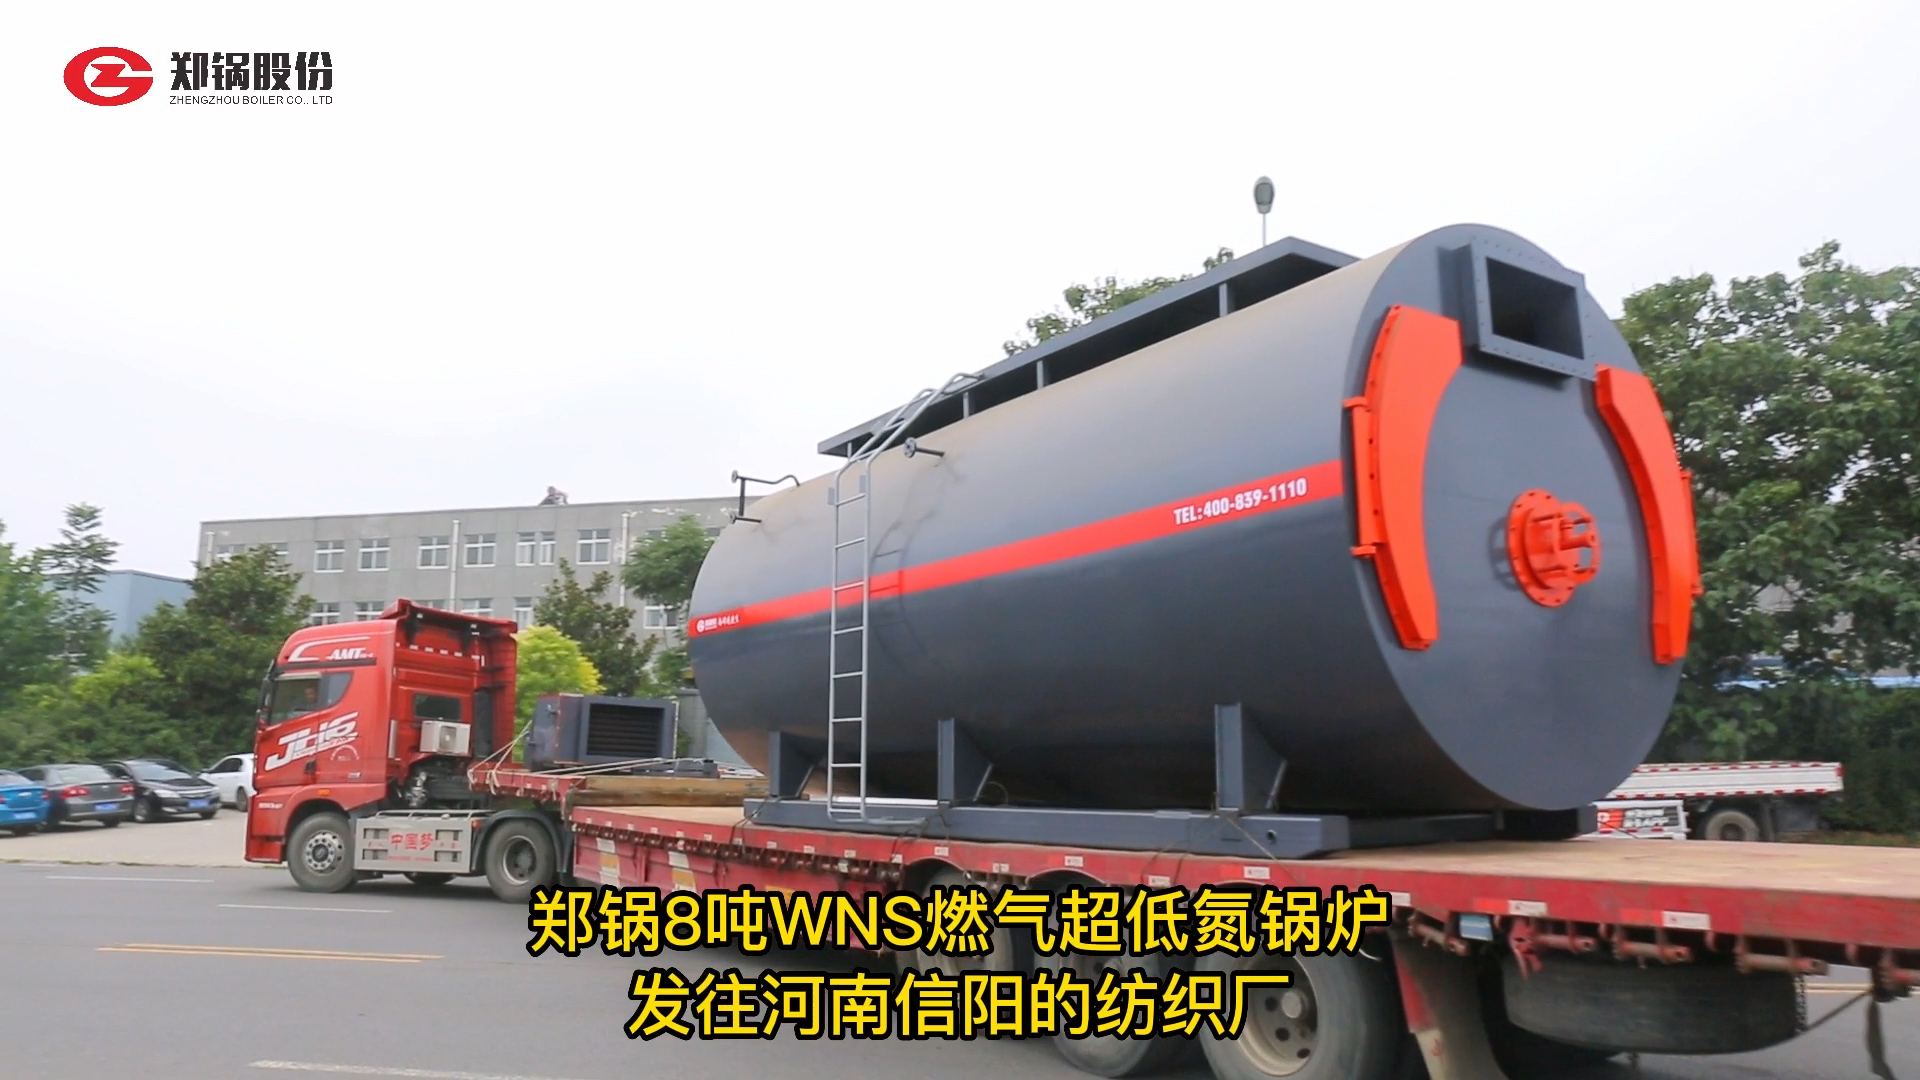 郑锅8吨WNS燃气锅炉发货